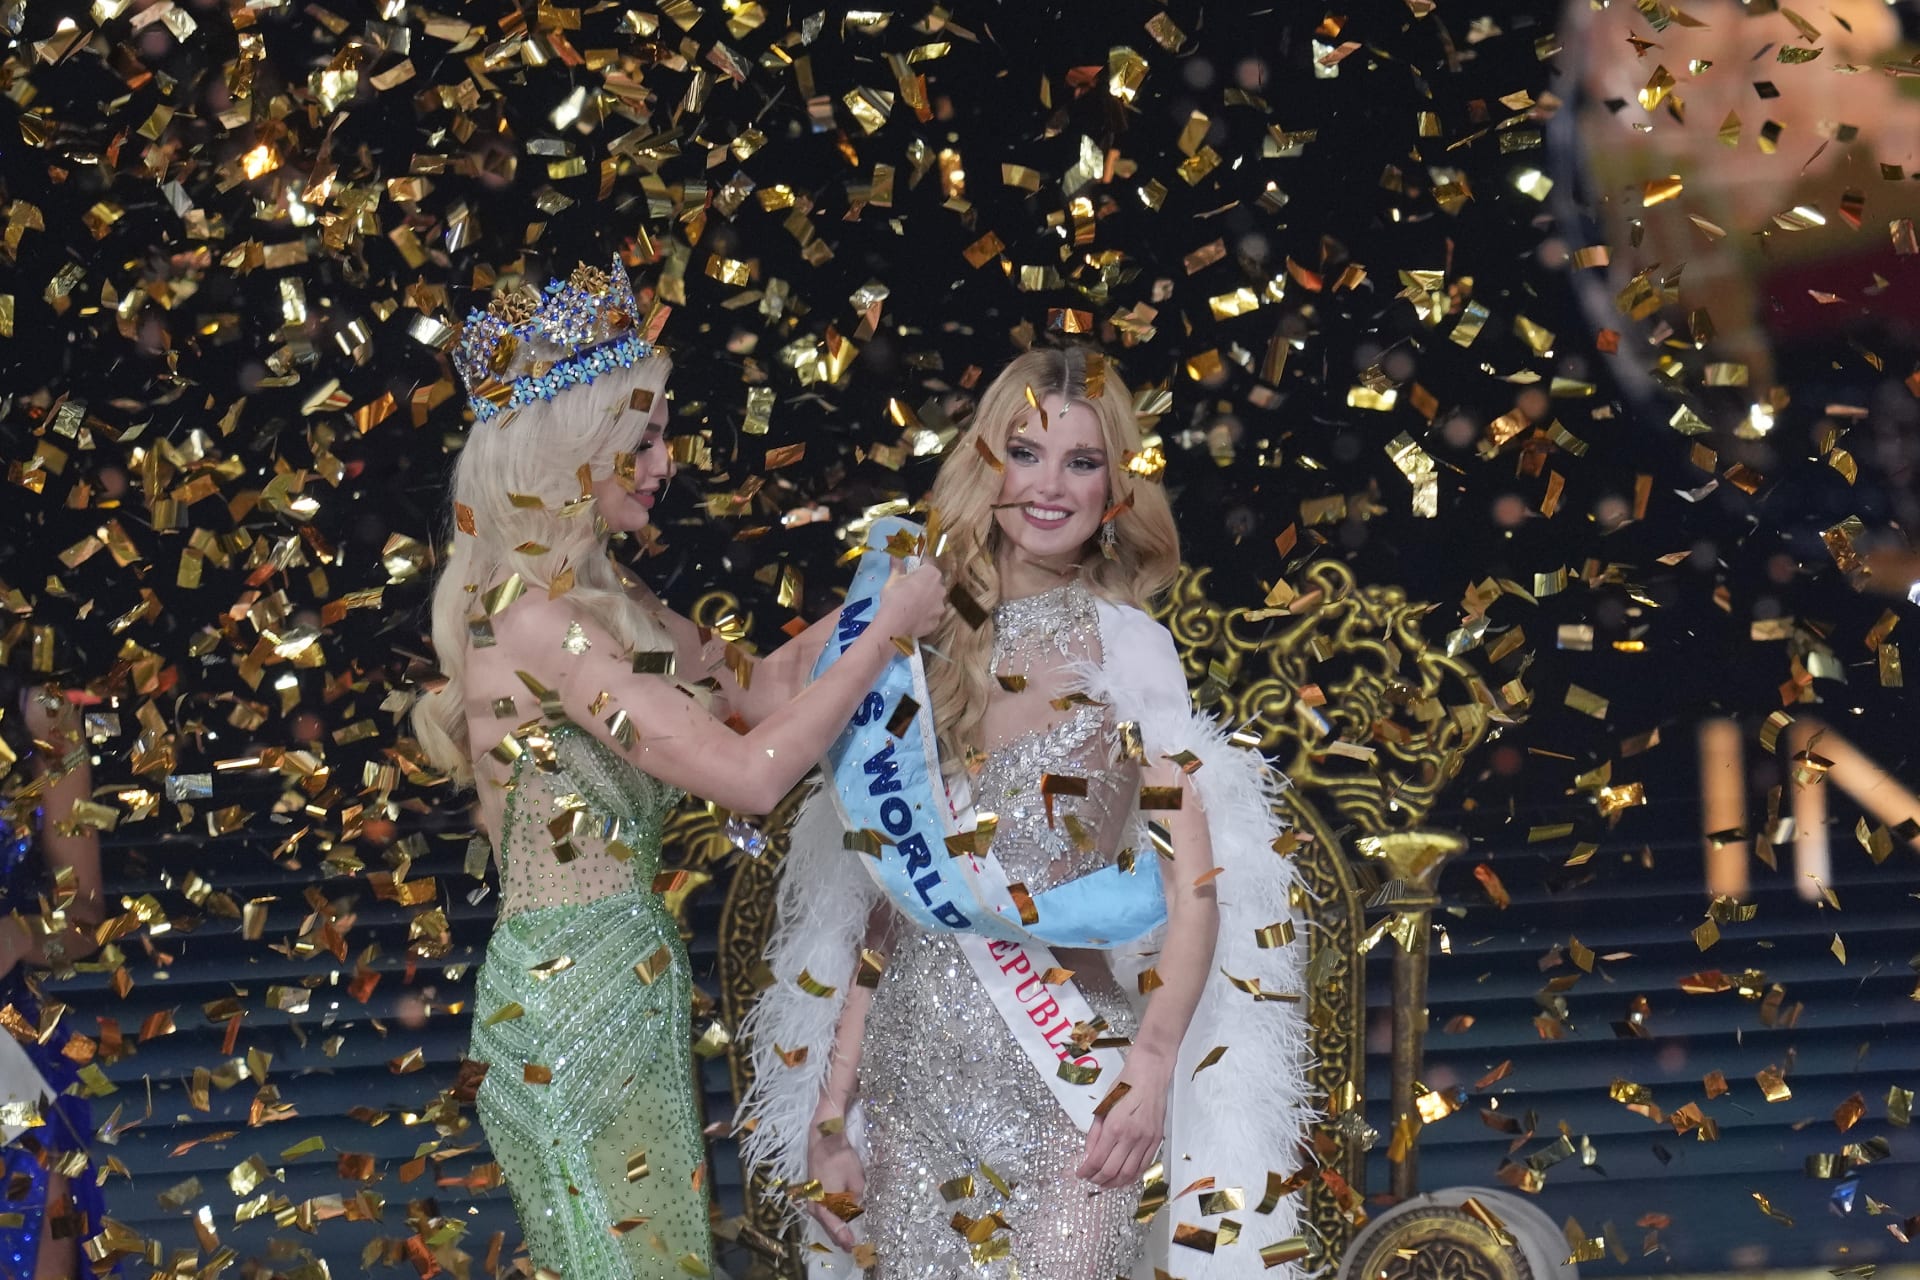 Pyszková je druhou Češkou, která prestižní titul Miss World získala.